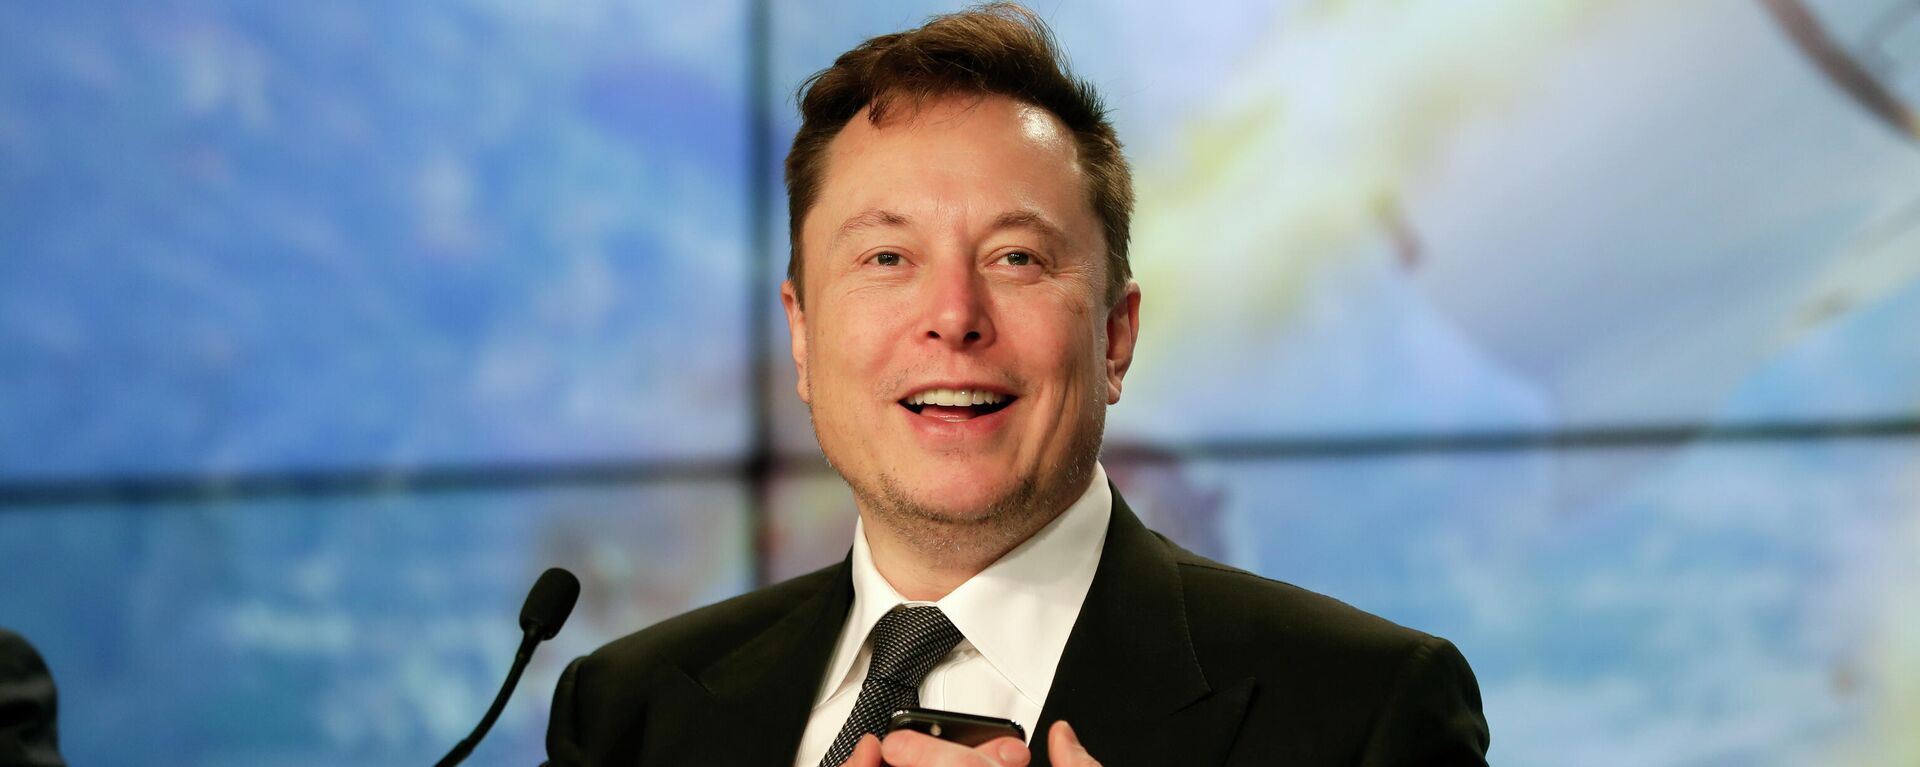 Elon Musk, CEO de Tesla y SpaceX - Sputnik Mundo, 1920, 10.12.2021